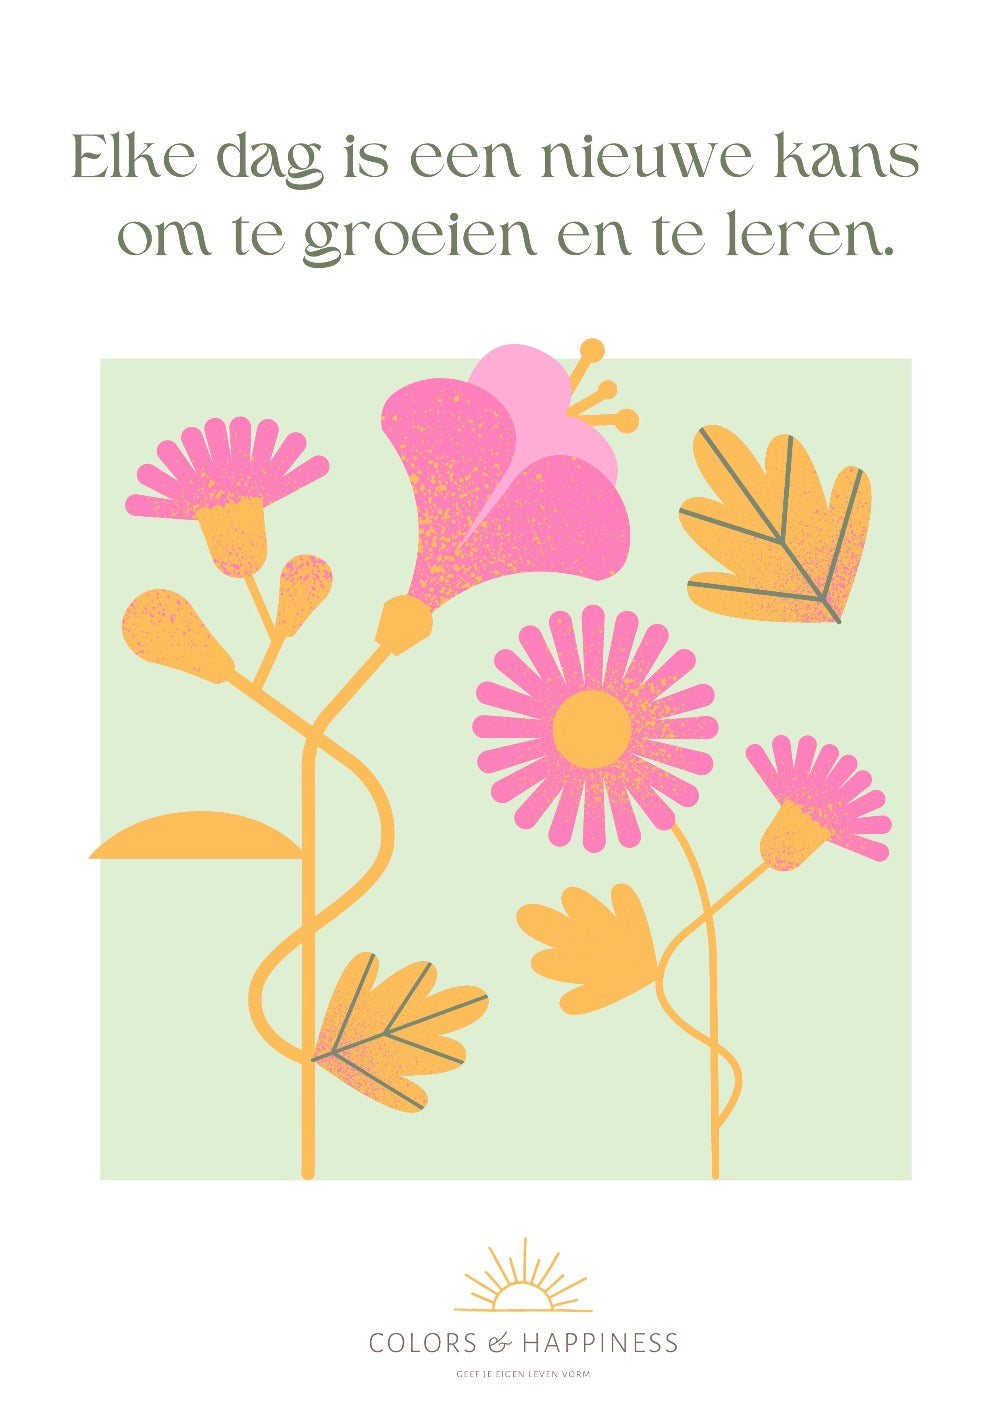 Inspirerende poster met quote "Elke dag..."en bloemen illustratie, digitale download voor een bewuster leven